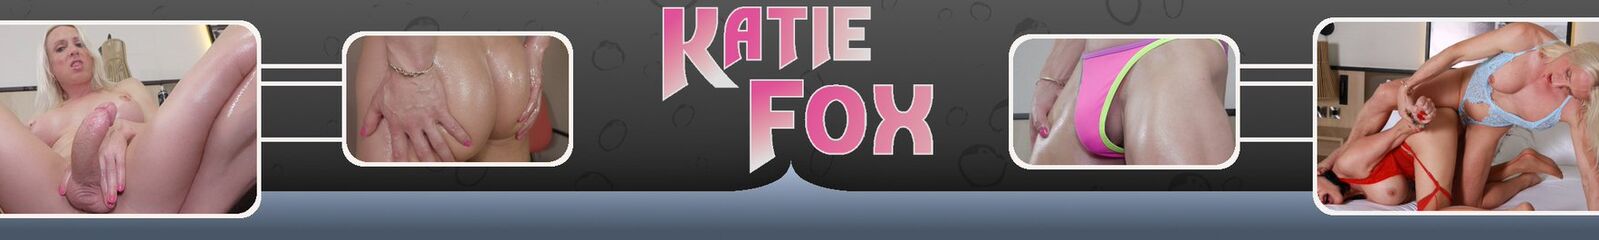 TS Katie Fox